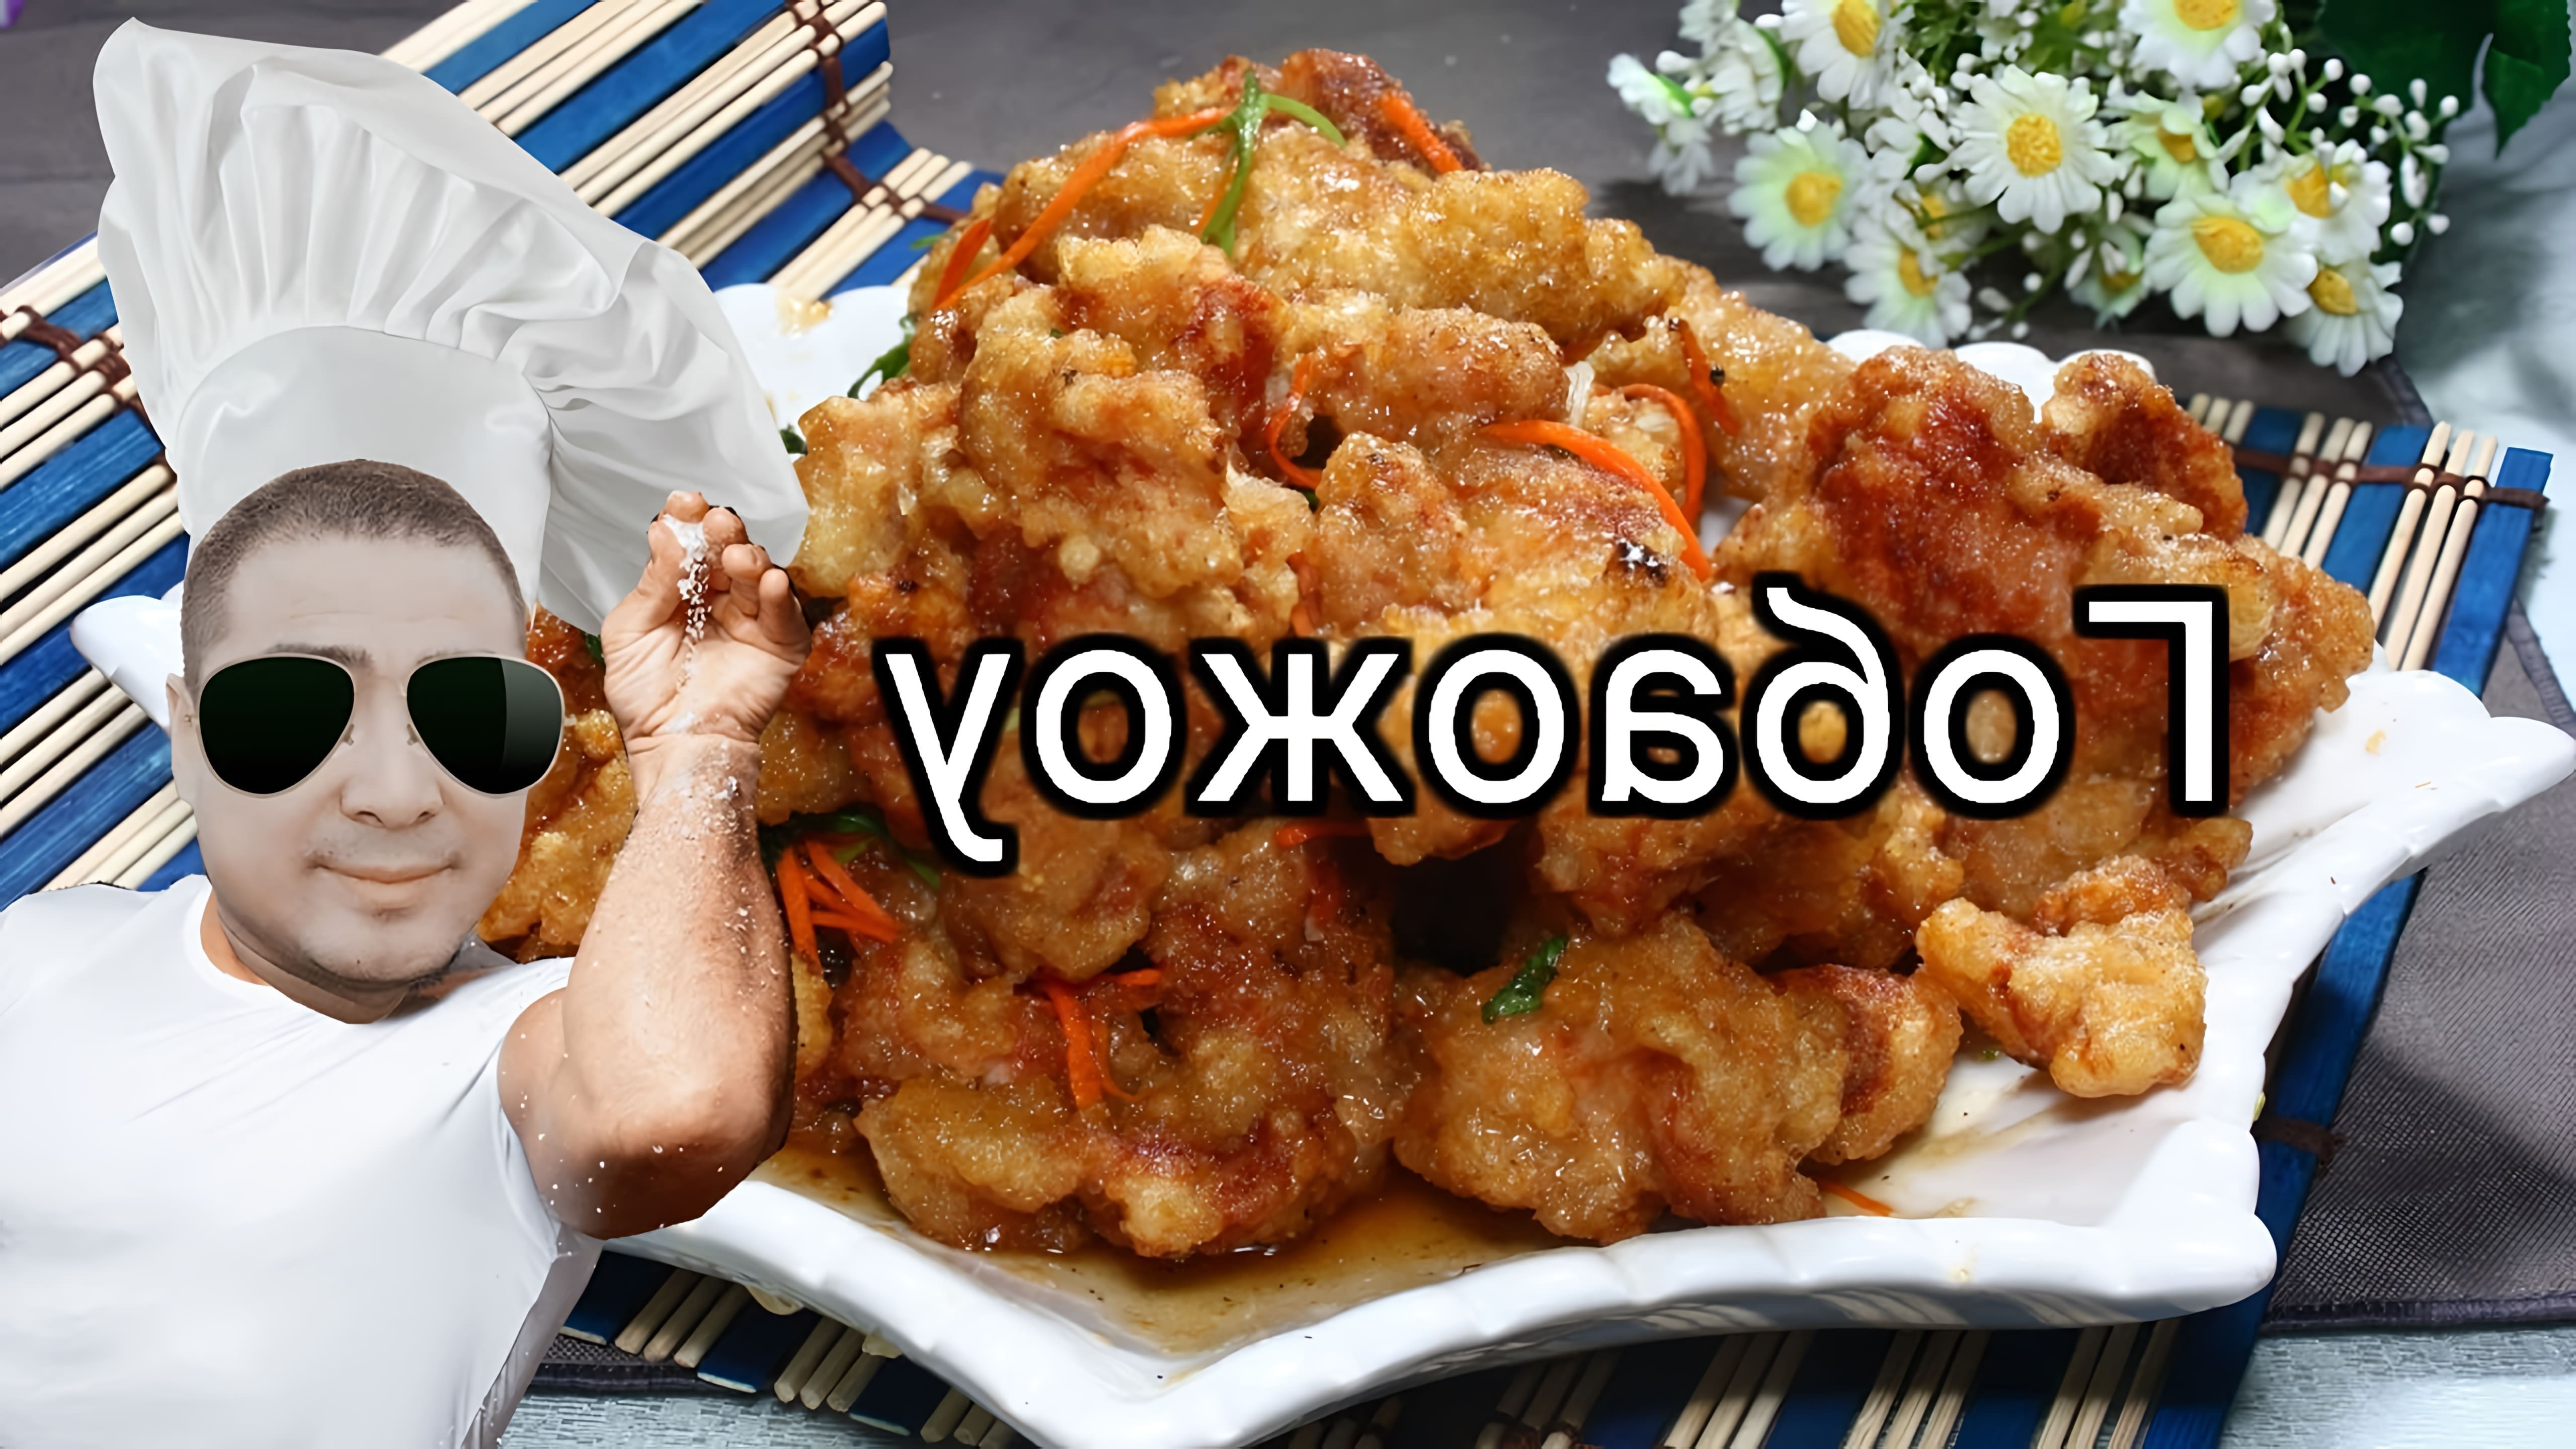 Рецепт Гобаожоу (Свинина в кисло-сладком соусе) - это видео-ролик, который демонстрирует процесс приготовления вкусного и ароматного блюда